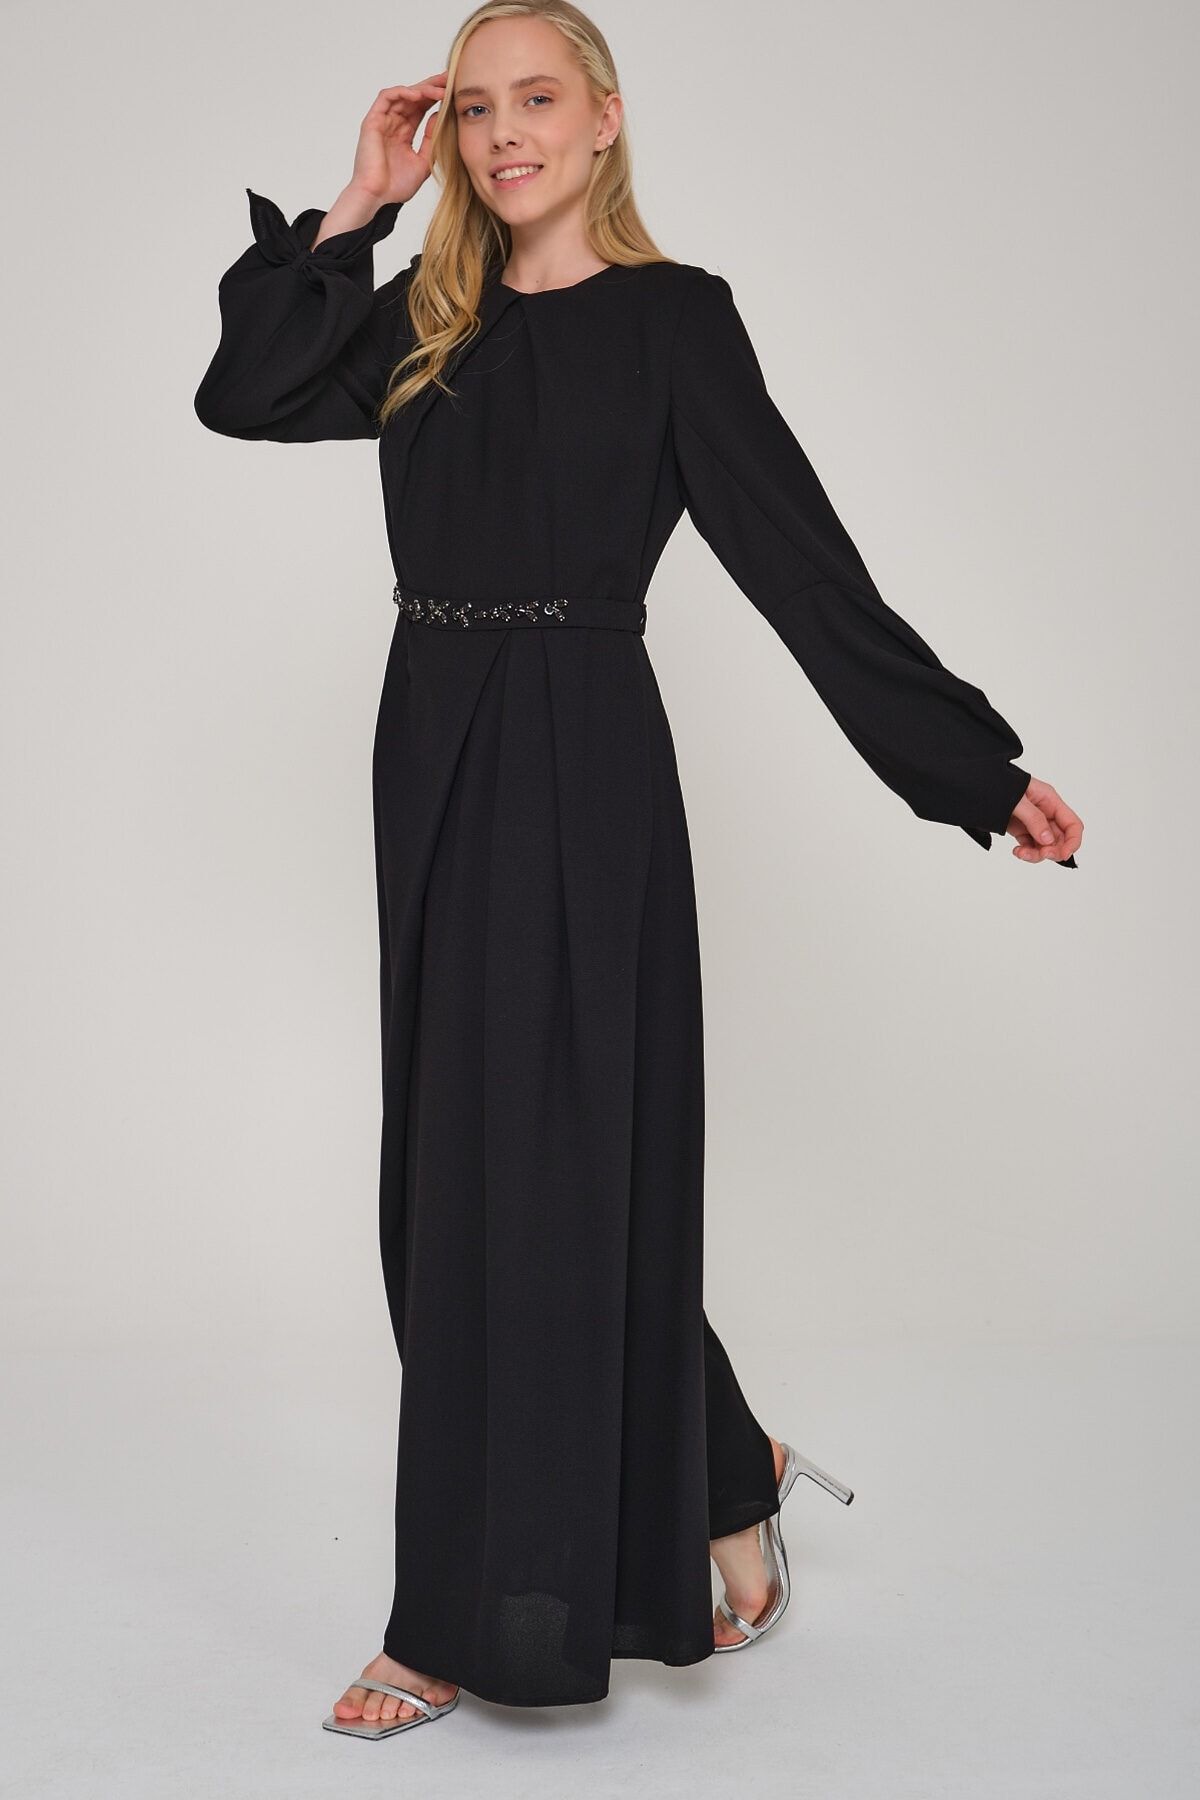 Mimya Siyah Swarovski Taşlı Uzun Elbise